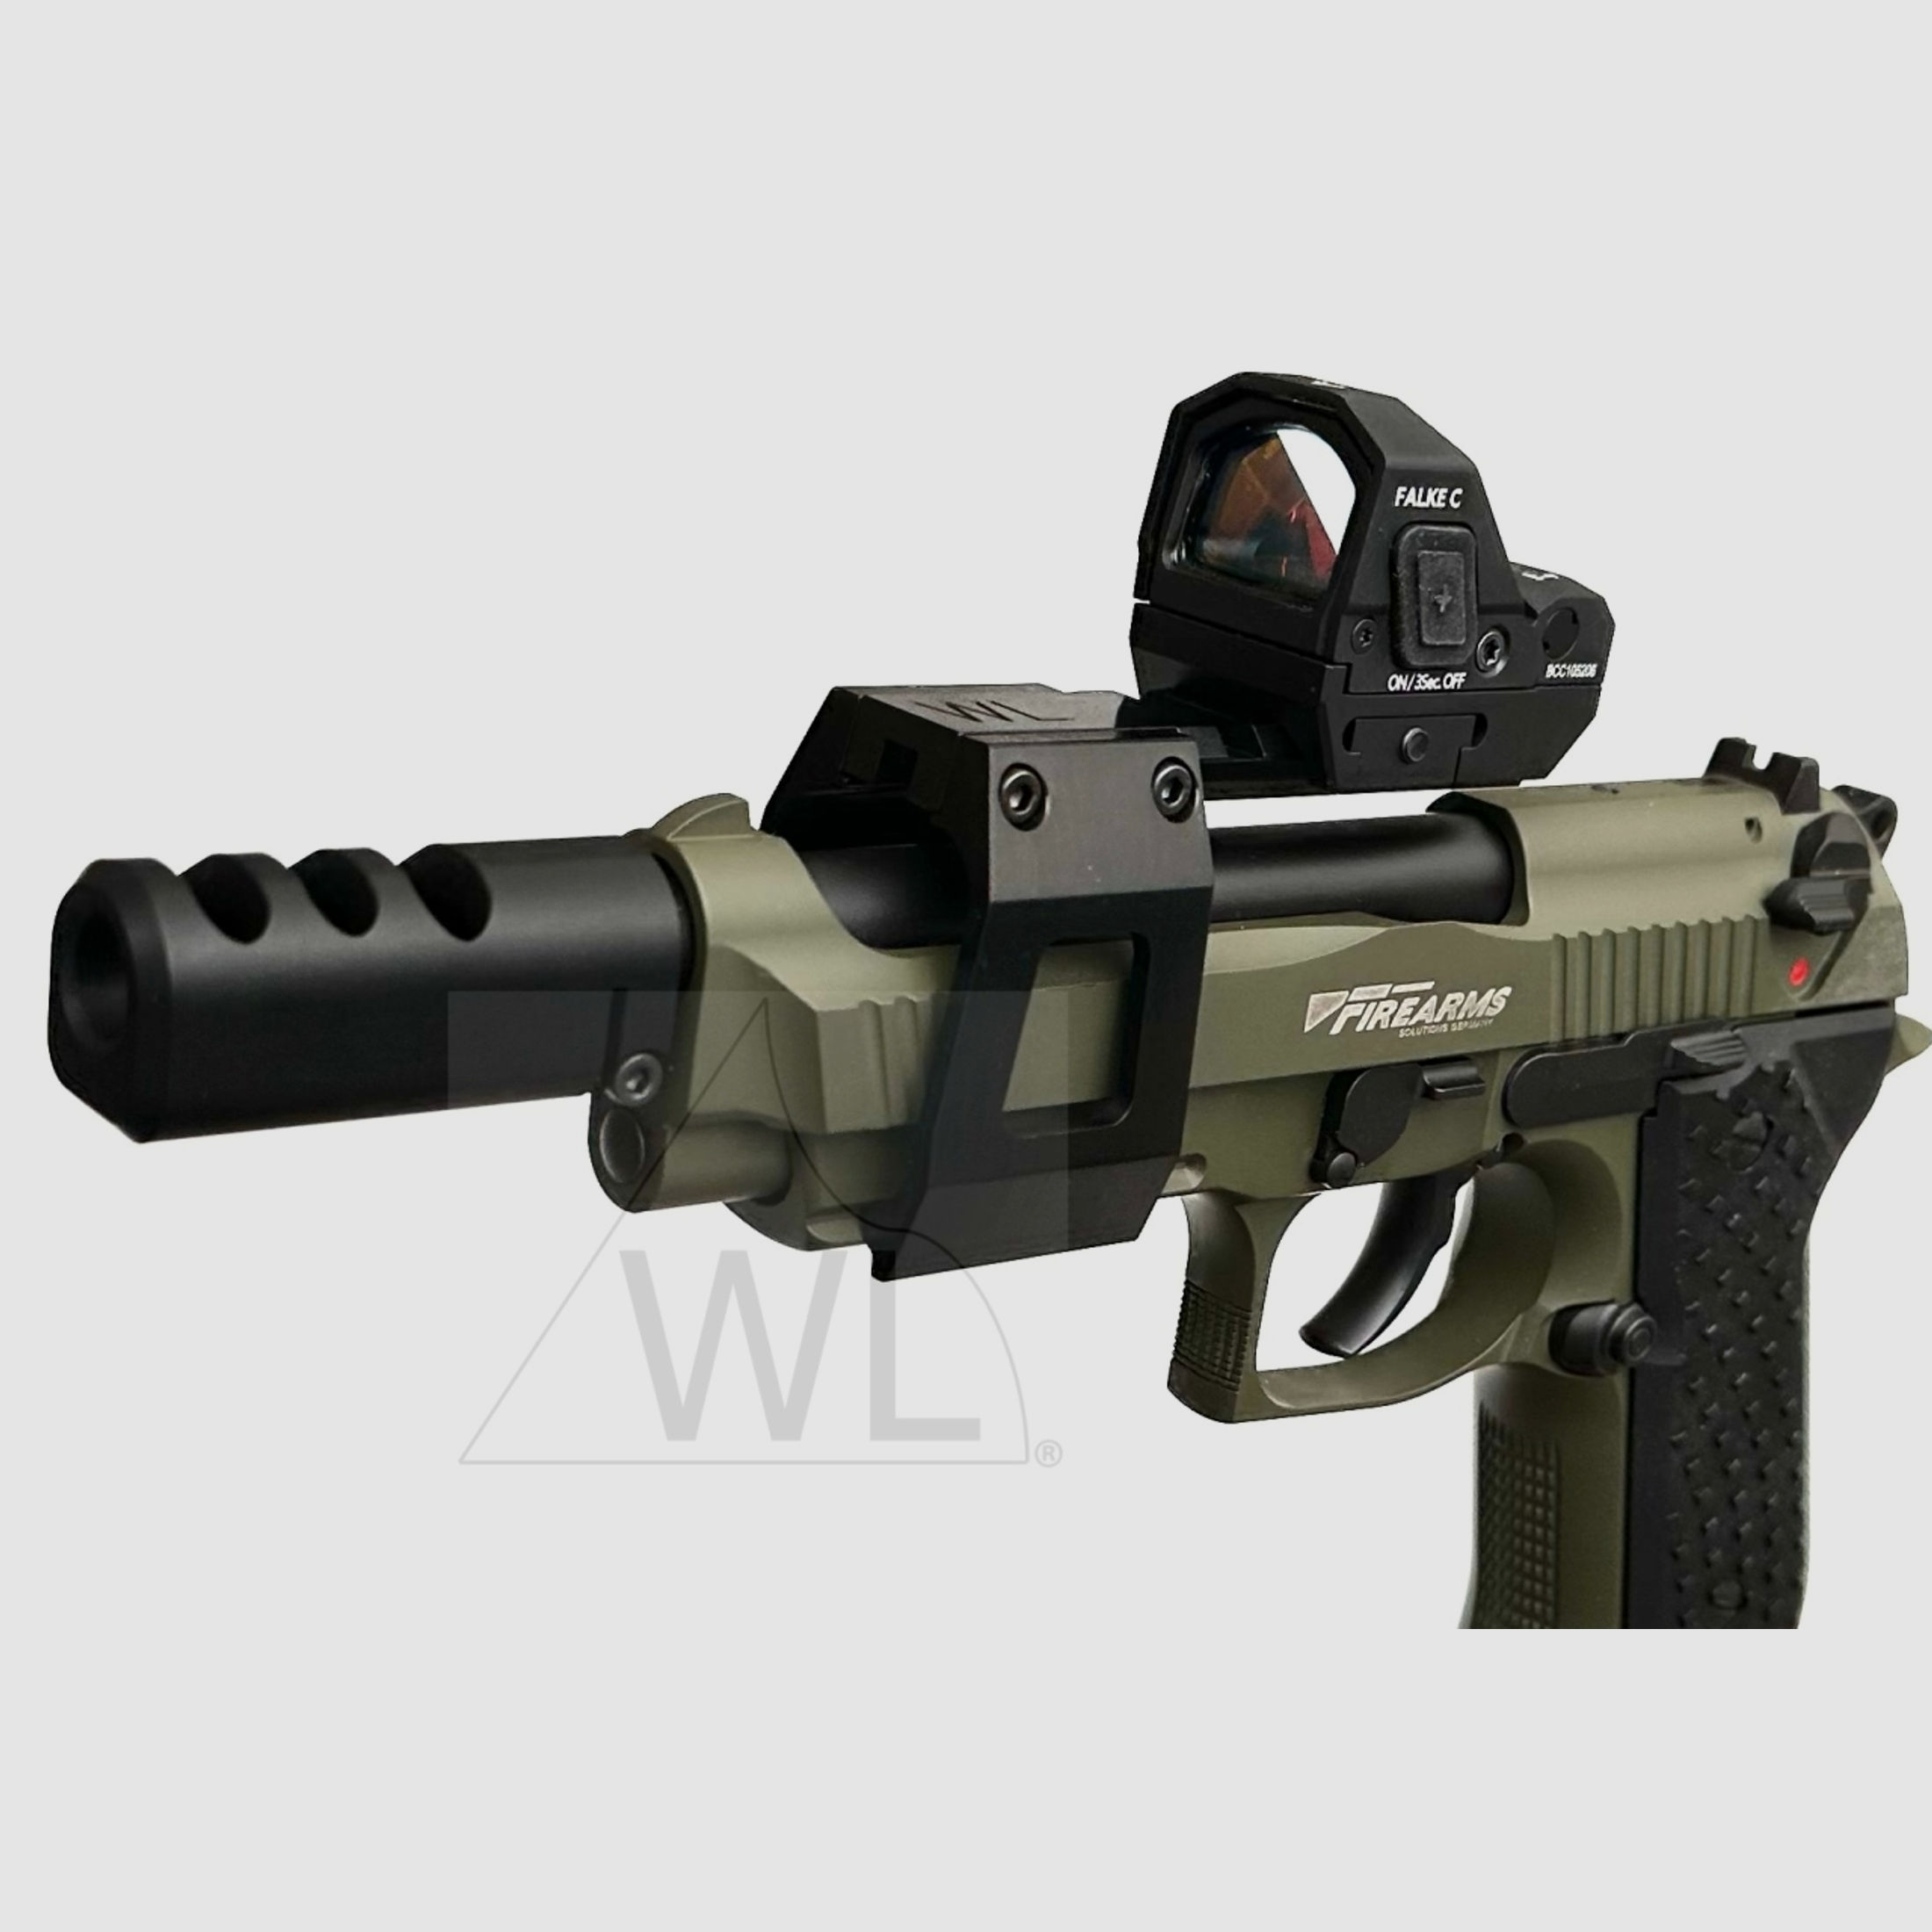 WL-92-Kompensator f. Pistolen 9mm Luger 1/2"-28 UNEF